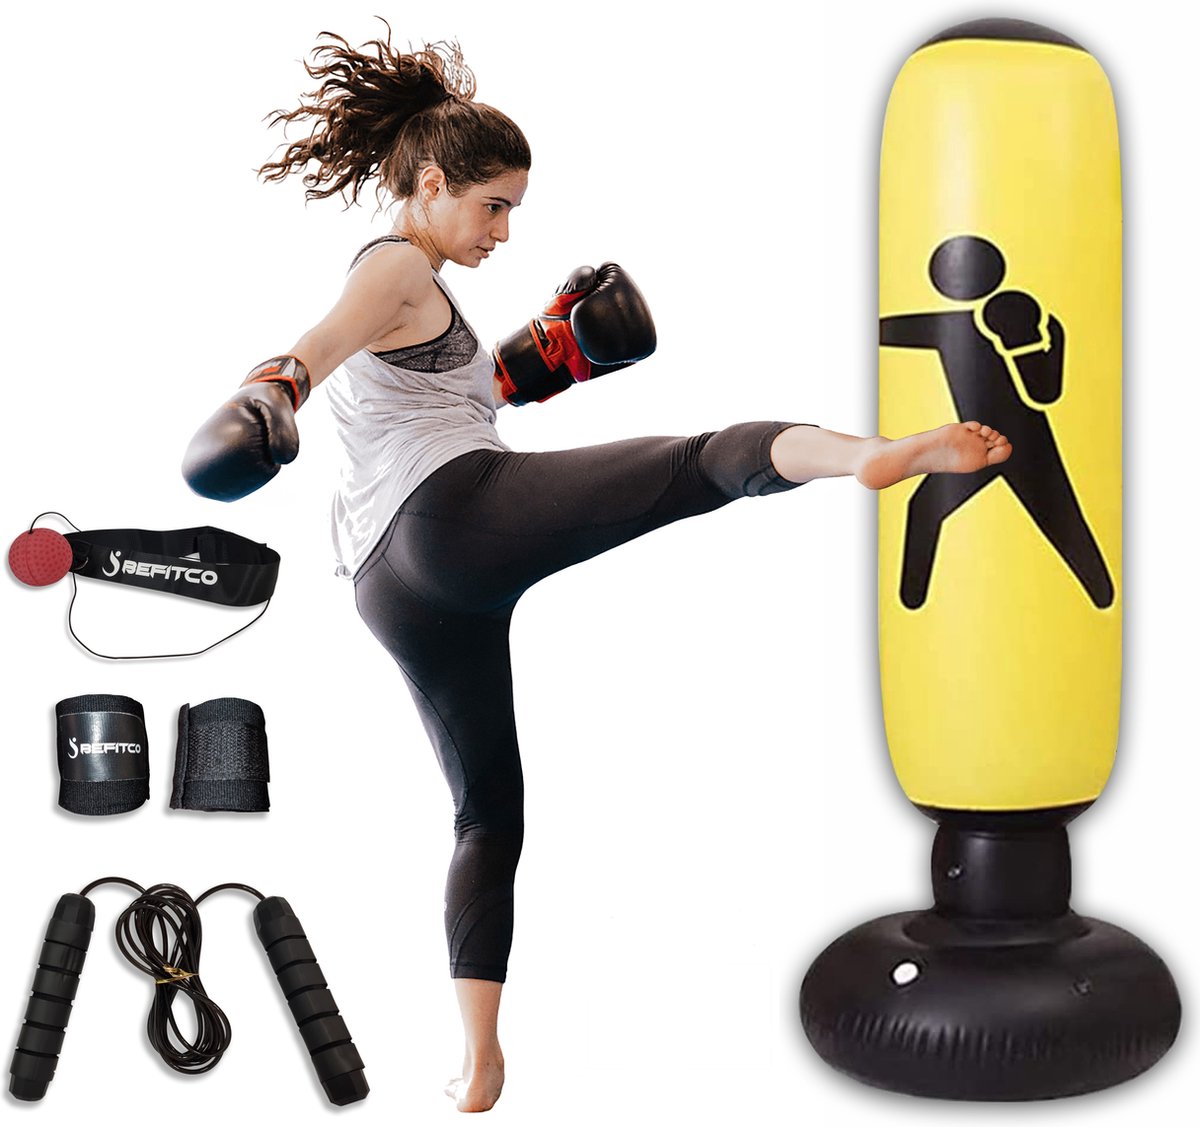 Befitco - Opblaasbare bokszak - Staande boksbal op voet - Complete boksset - Bokspaal voor volwassenen en kinderen